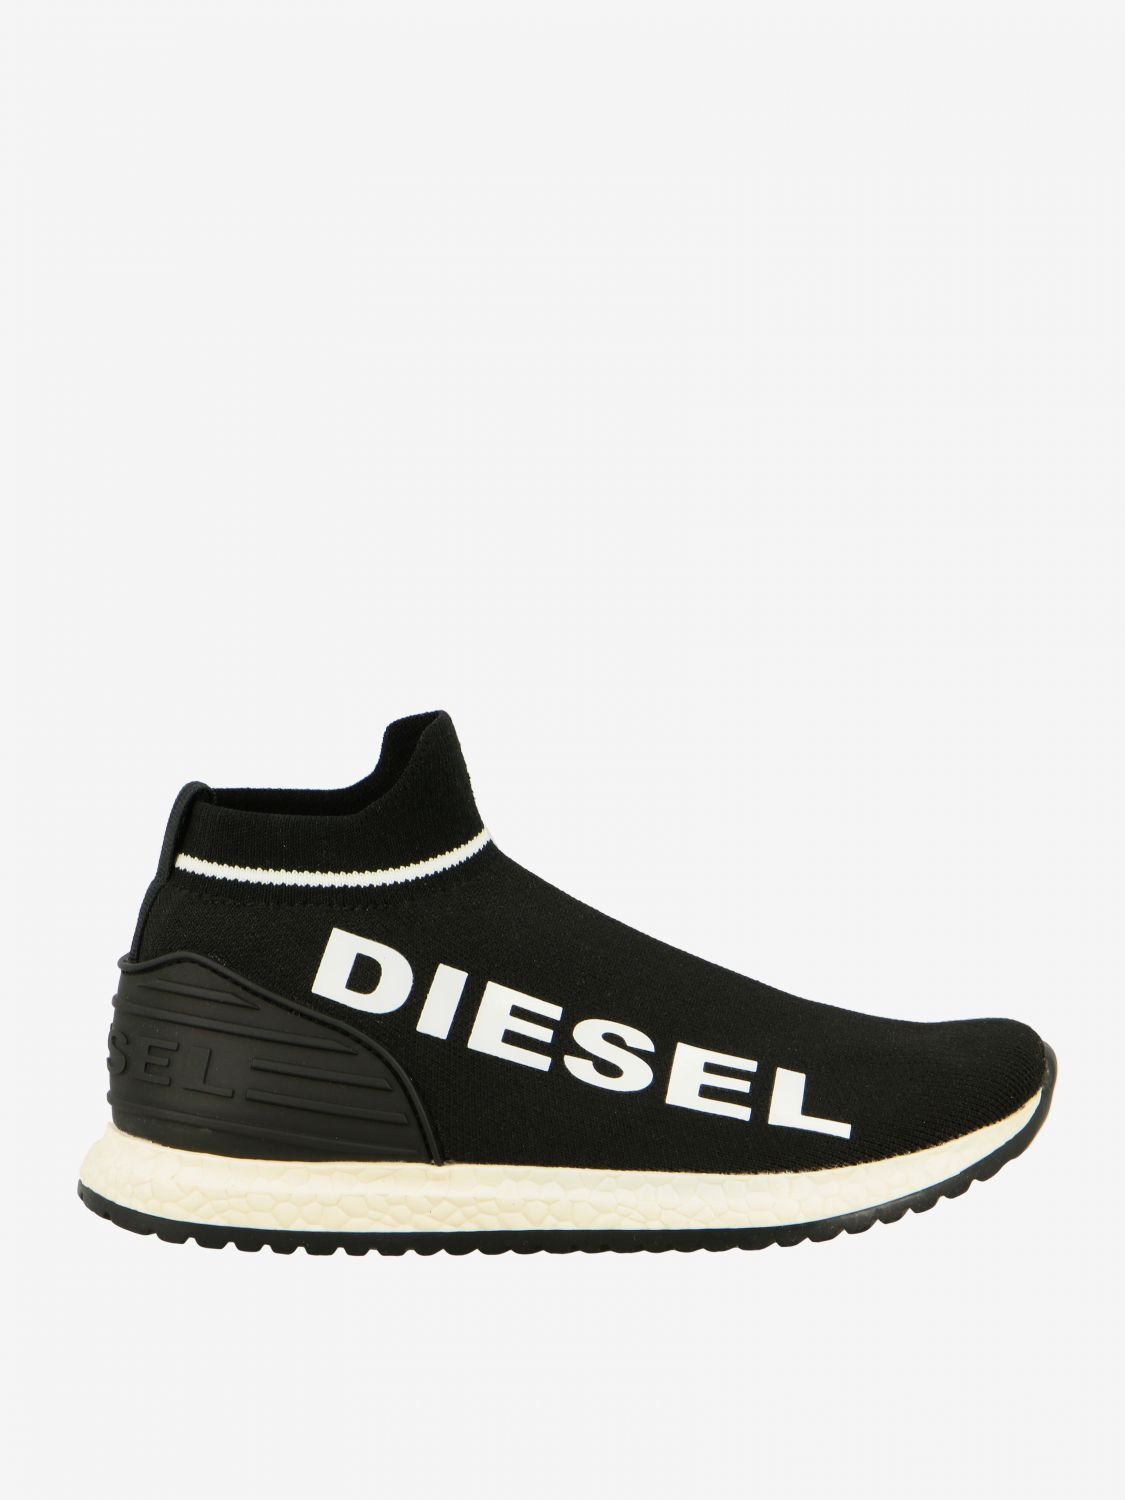 diesel shoes uk